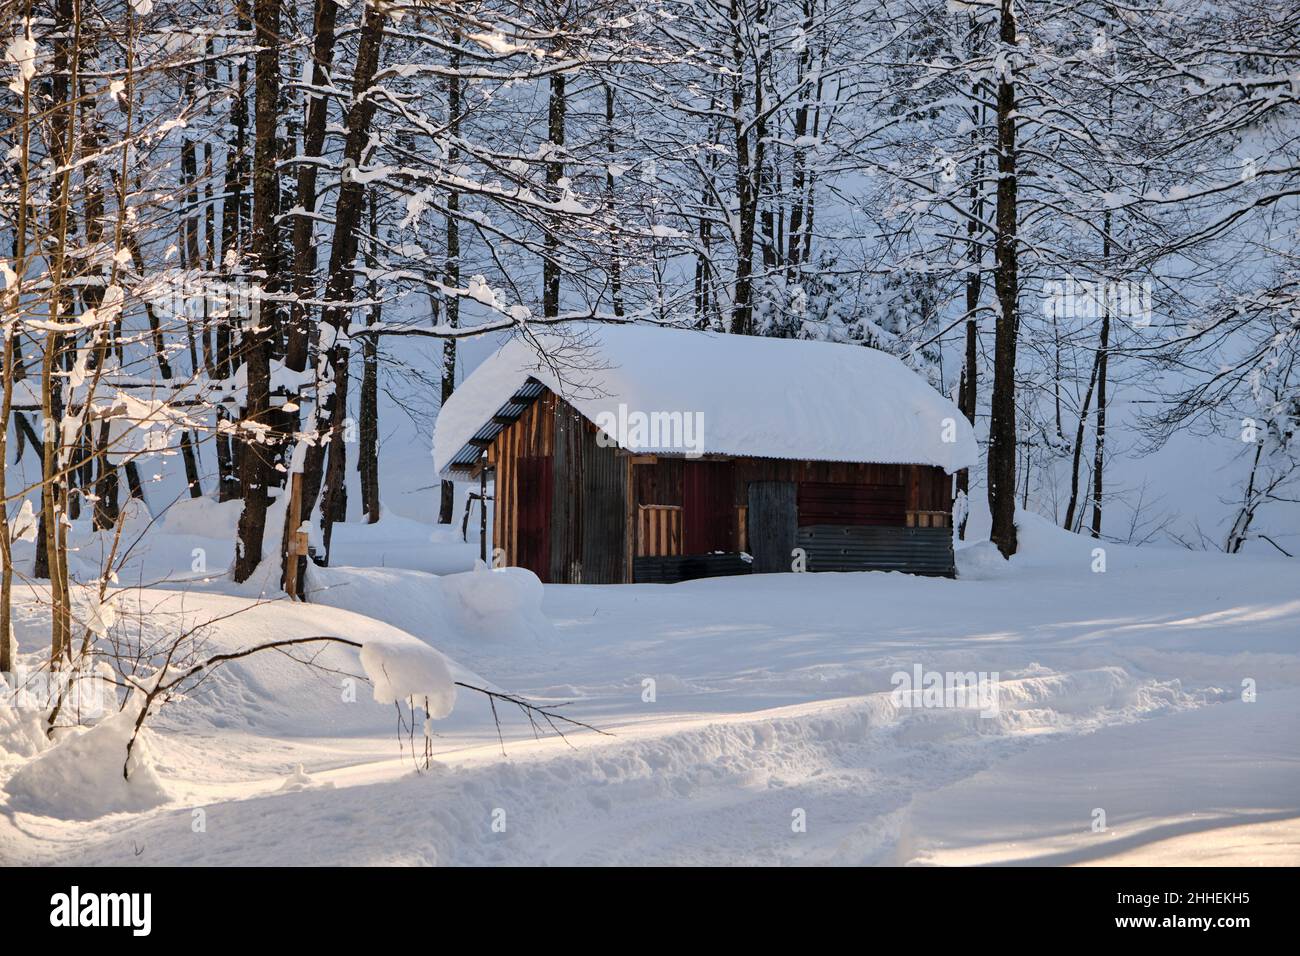 Casa del villaggio, foto d'inverno, neve coperta ovunque e tetto di casa in inverno e foto di neve bianca. Foto Stock